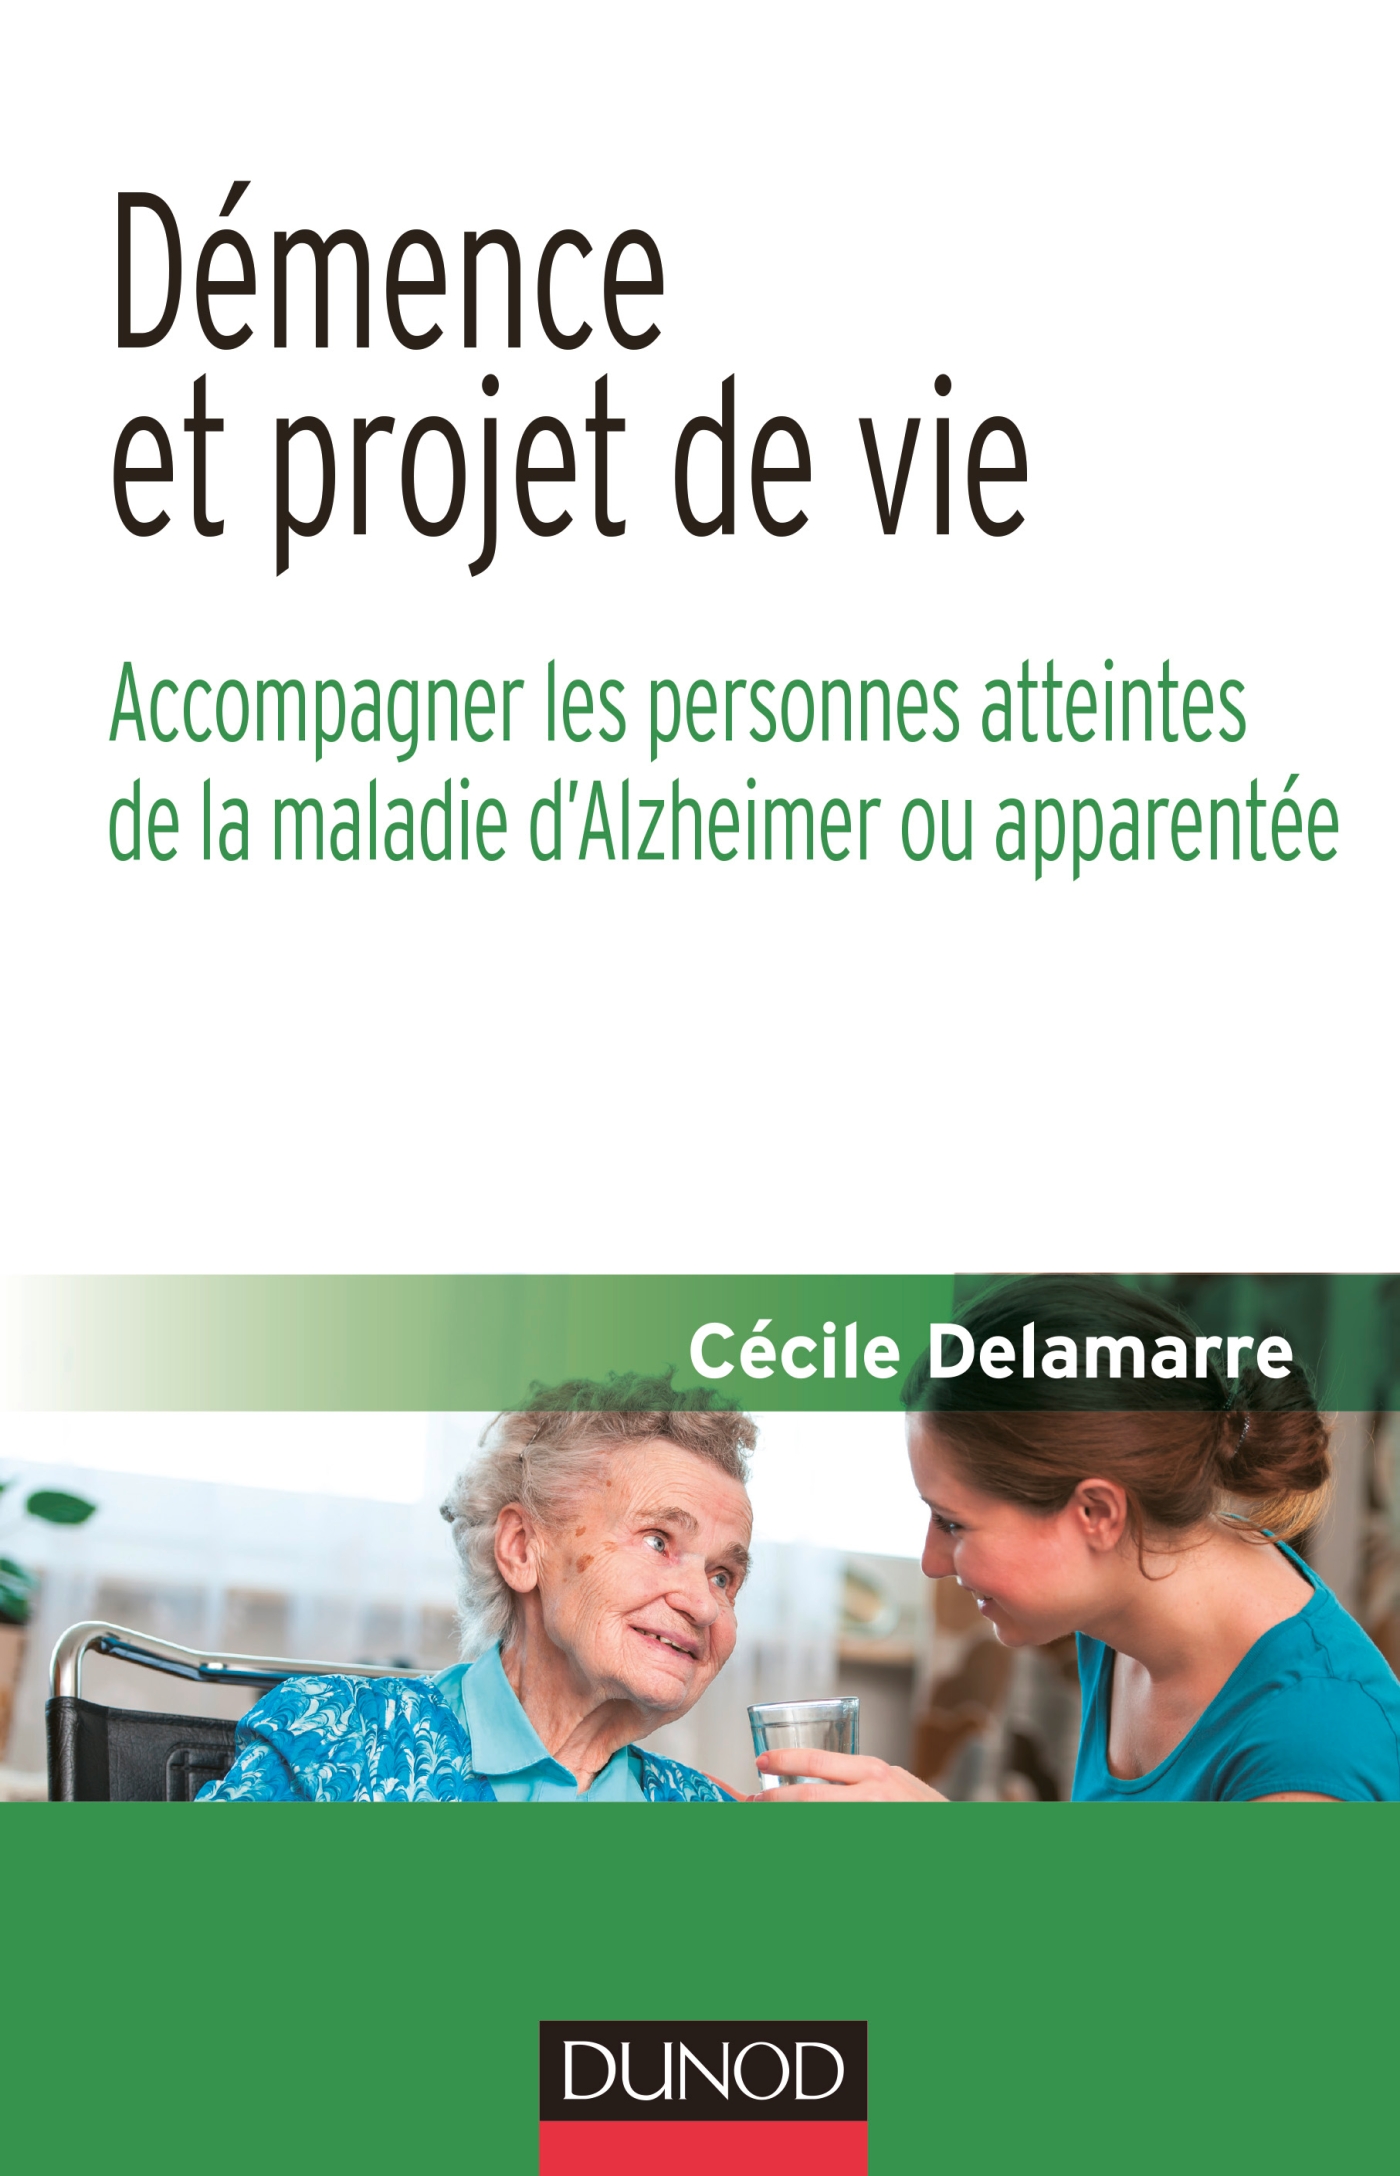 Démence et projet de vie Ac pagner les personnes atteintes de la mala d Alzheimer ou apparentée Livre Vieillesse de Cécile Delamarre Dunod